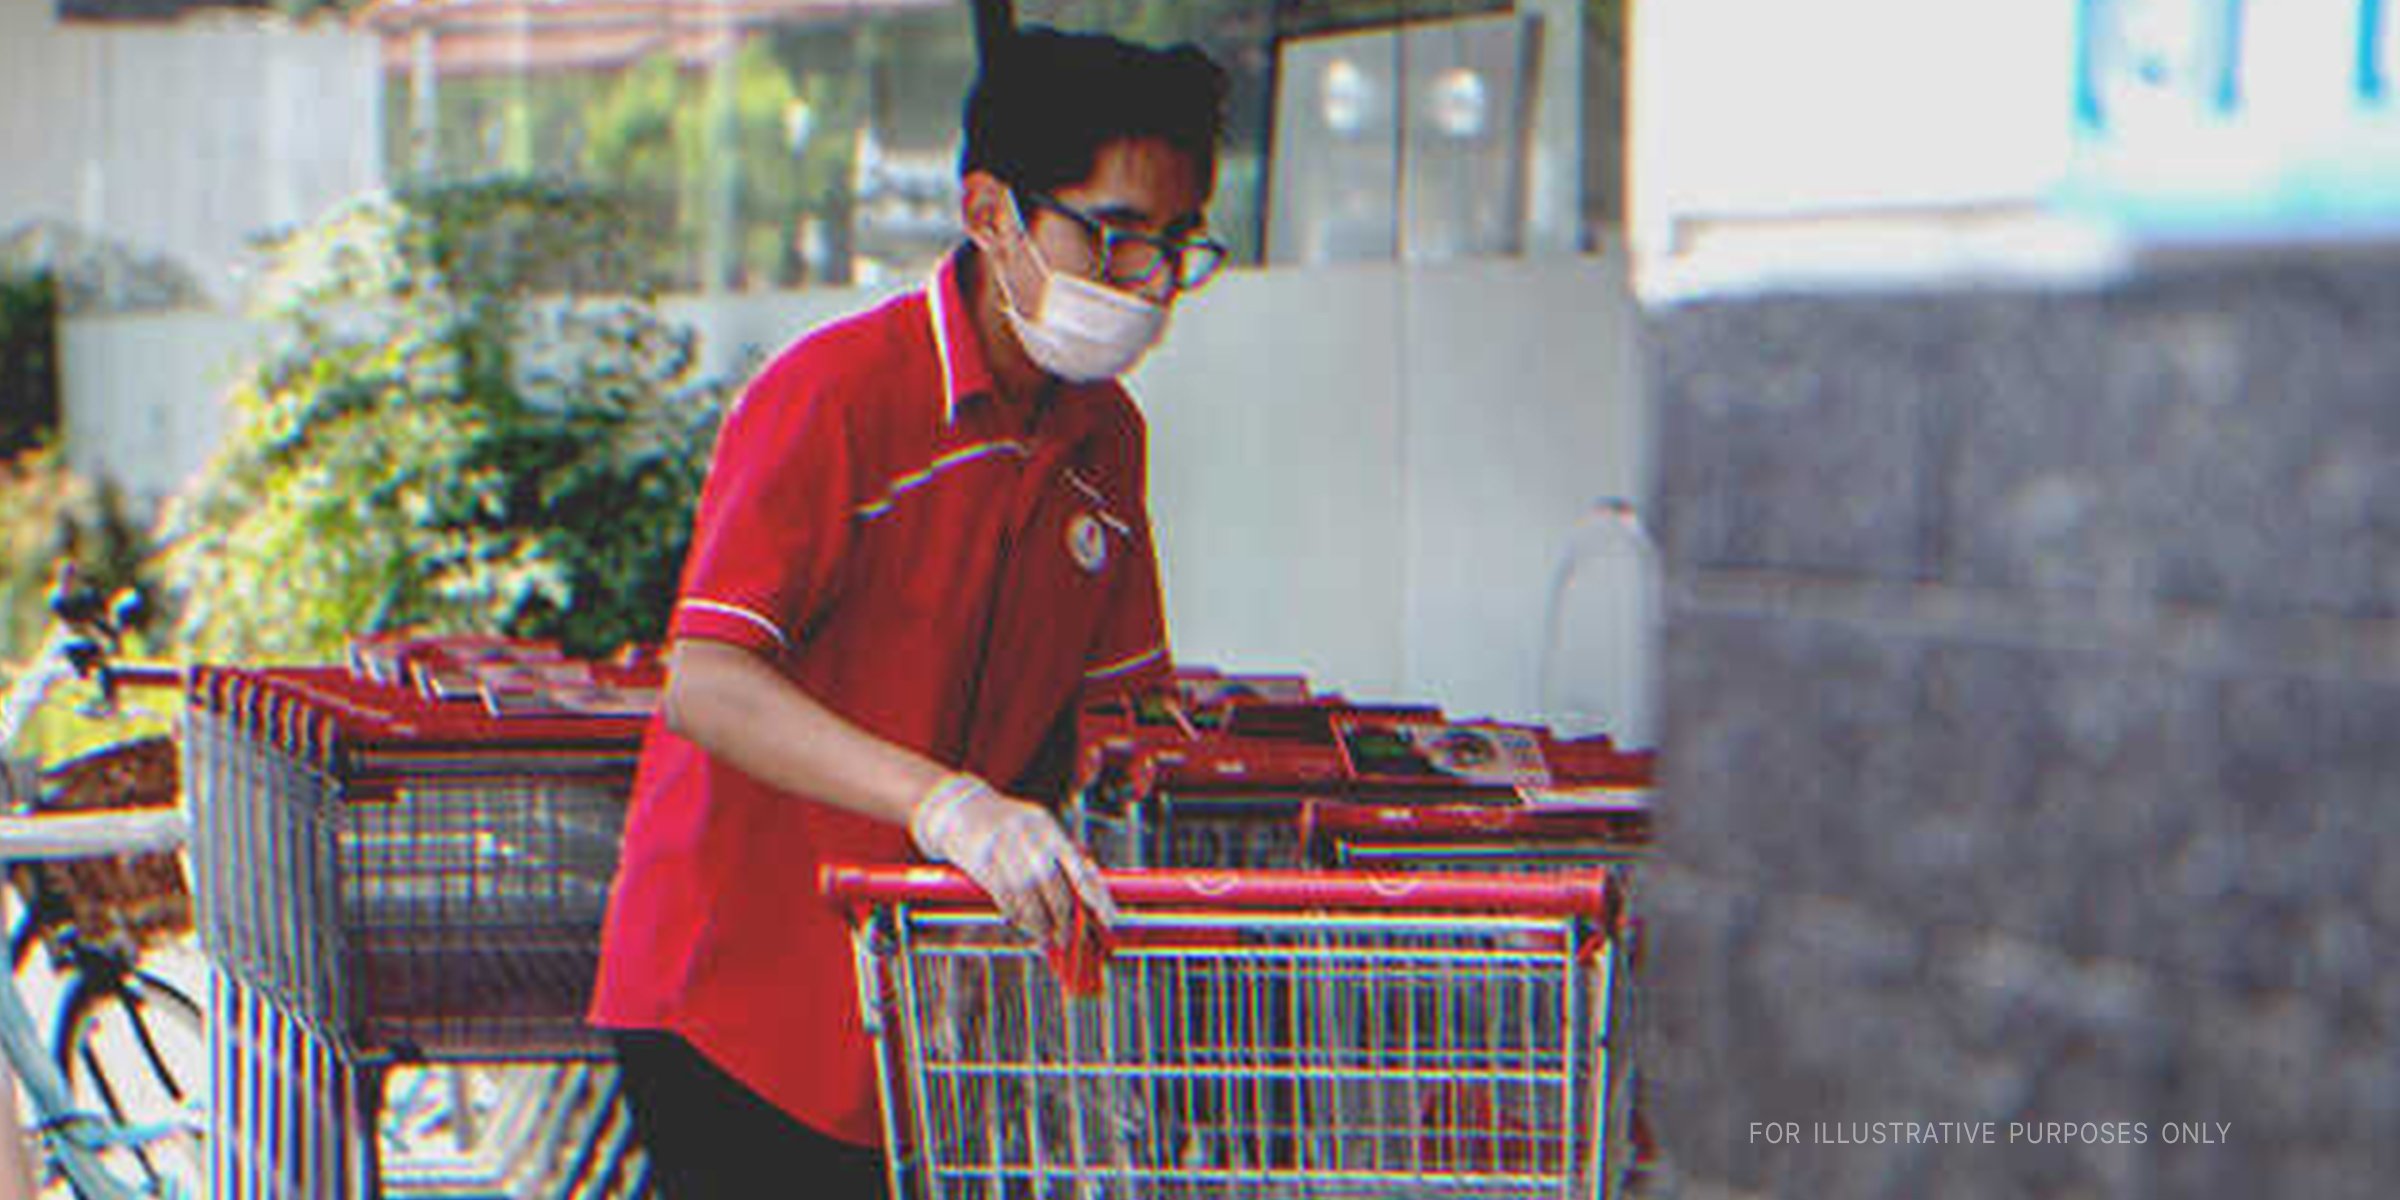 Ein Mann mit Einkaufswagen | Quelle: Shutterstock